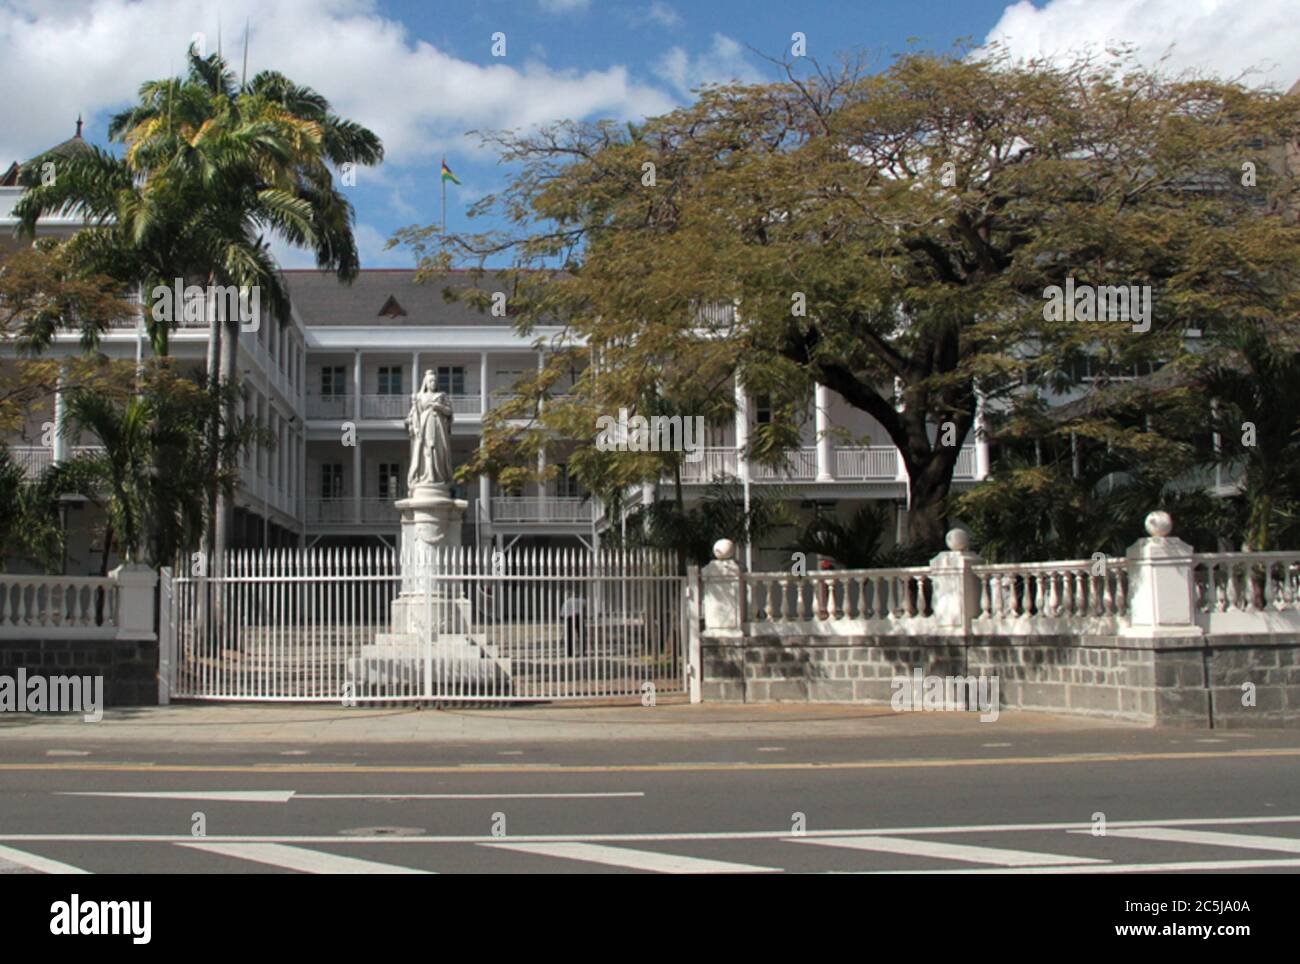 ISOLA DI MAURITIUS; 3.7.2012: Alcuni paesaggi e la diversità faunistica della Repubblica di Mauritius (Néstor J. Beremblum / Alamy News) Foto Stock